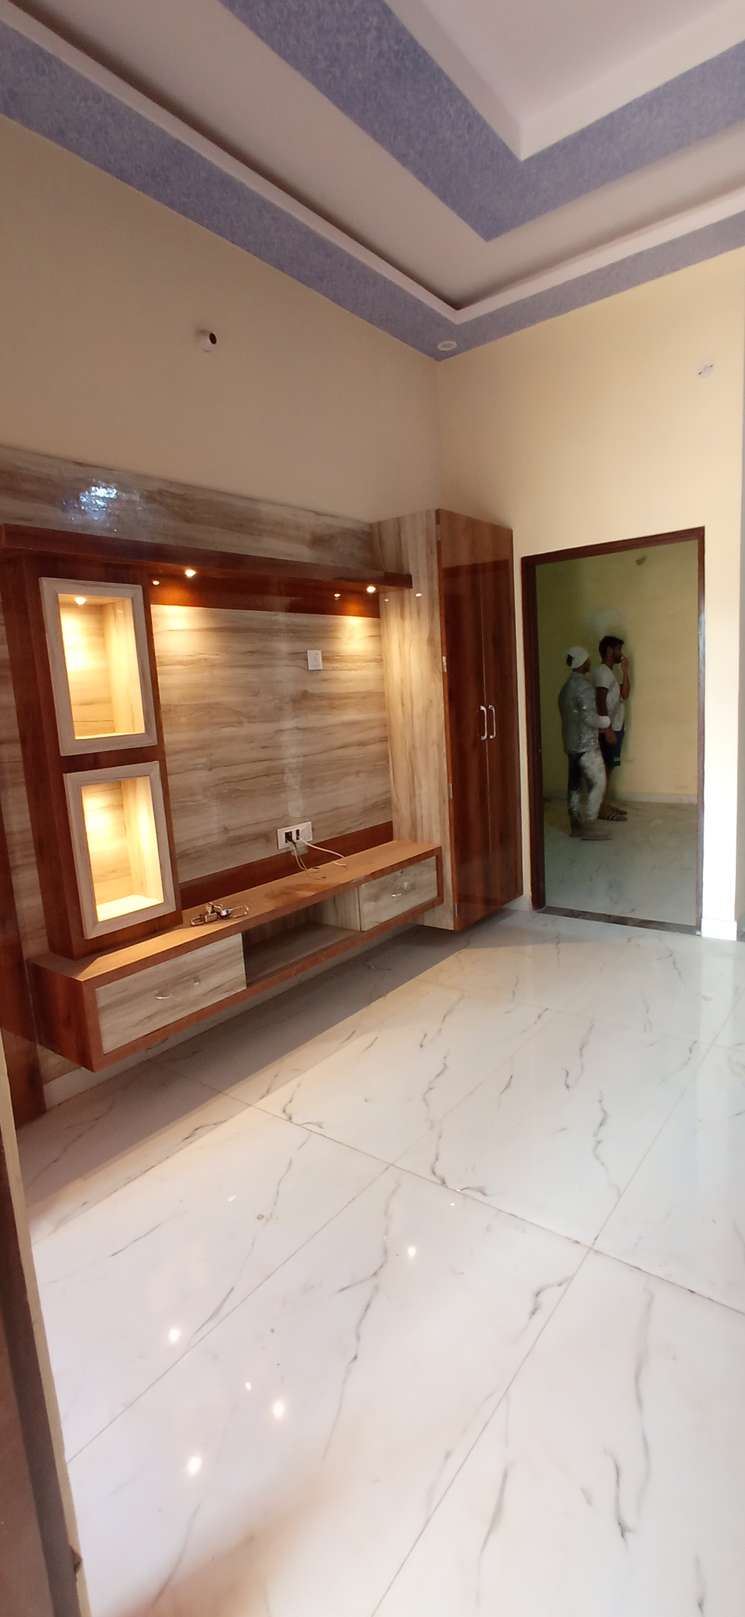 3 Bedroom 2000 Sq.Ft. Villa in Niwaru Jaipur